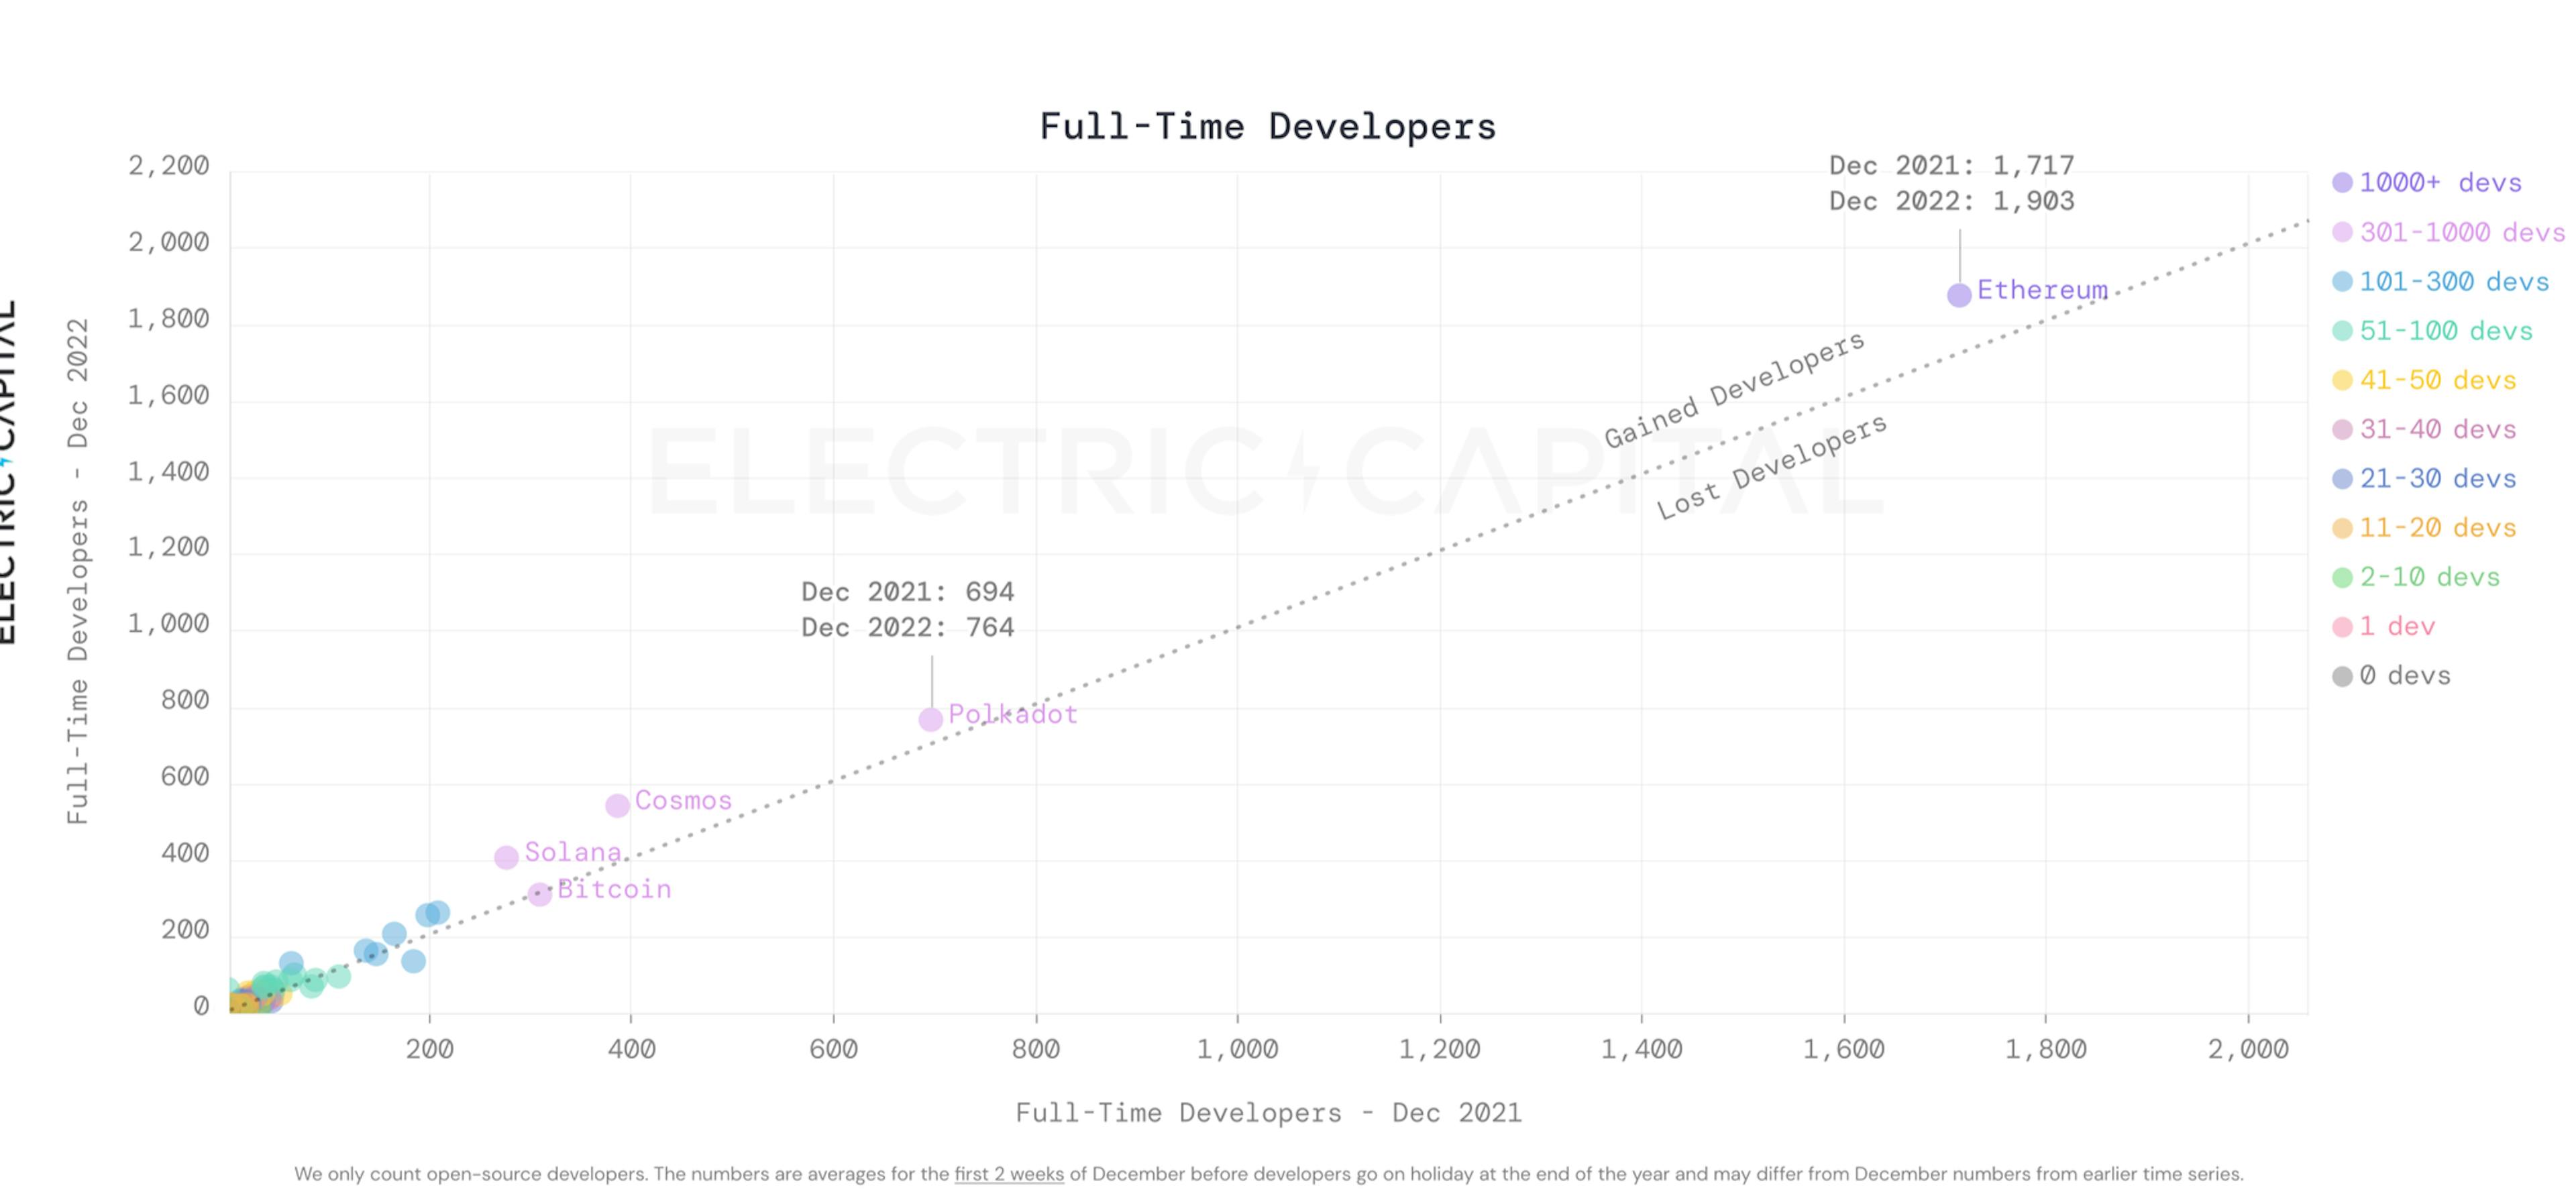 Full-Time Developers